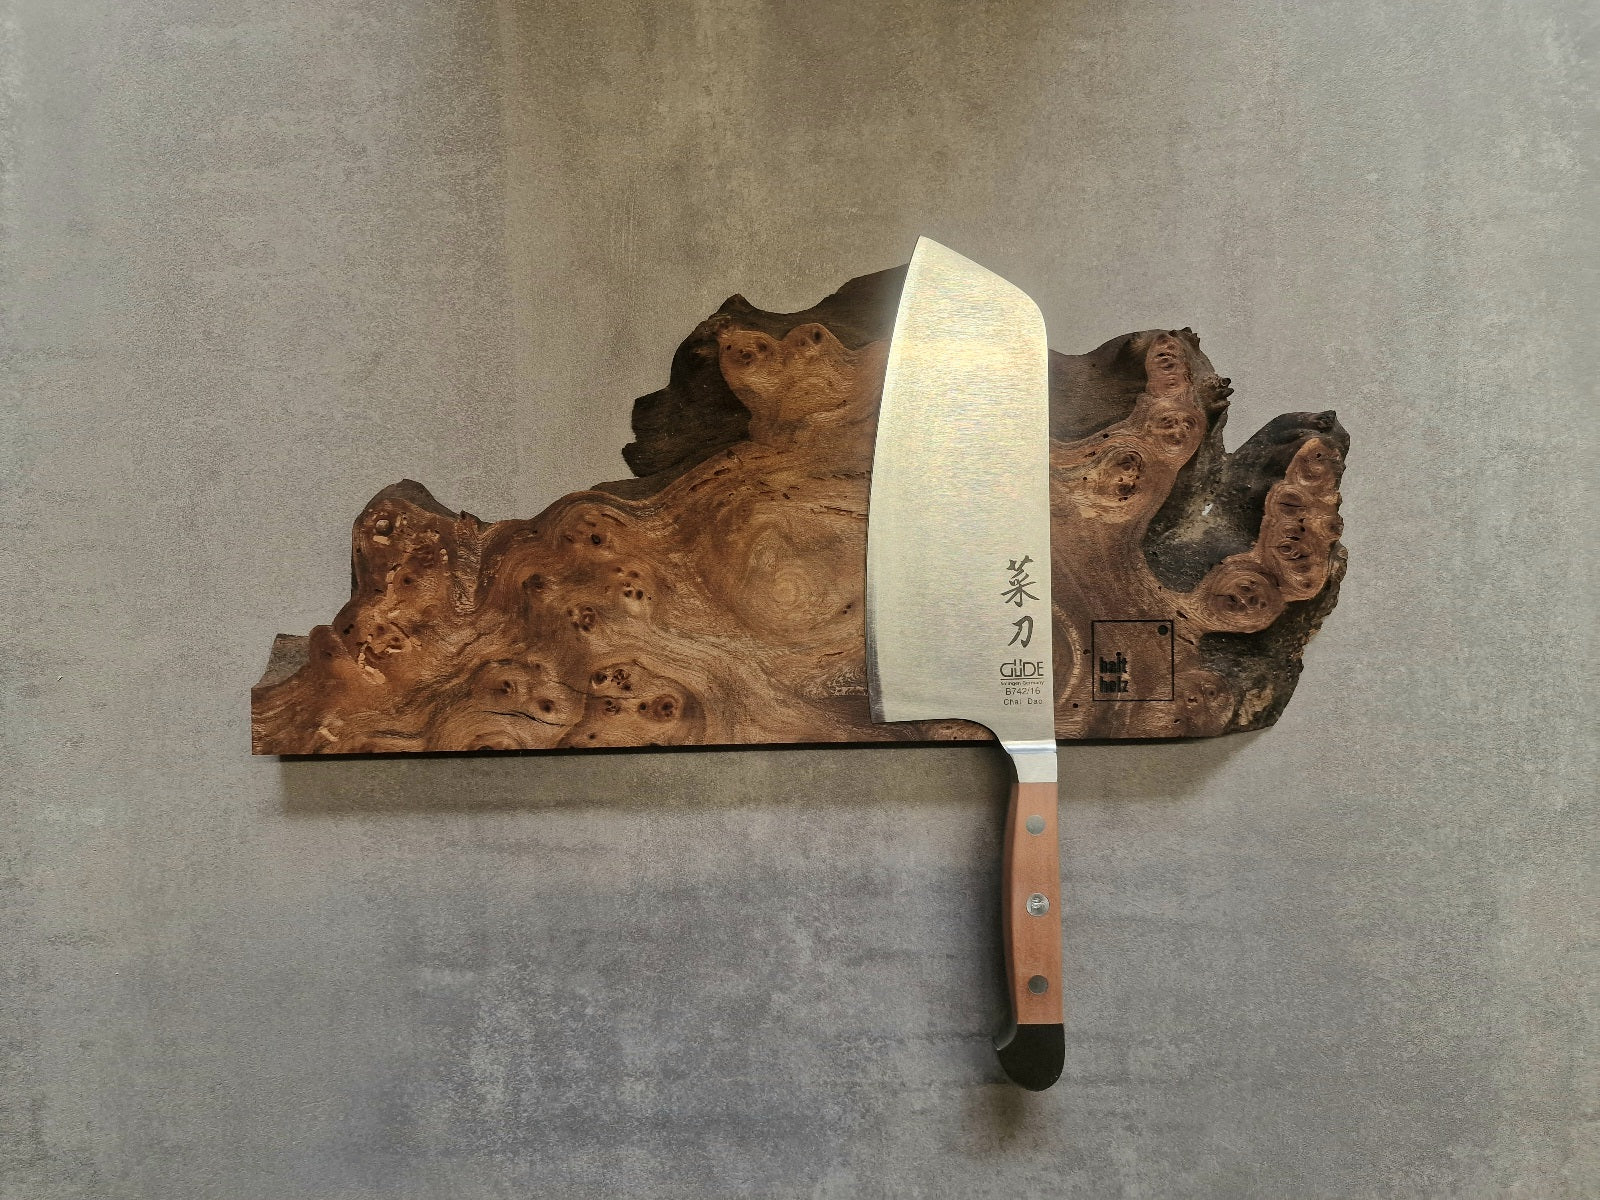 Wunderschöner magnetischer Messerhalter für 5 Messer. Unikat aus Maserulme, Rüster mit vielen Schwüngen. Dekoriert mit einem GÜDE Kochmesser.